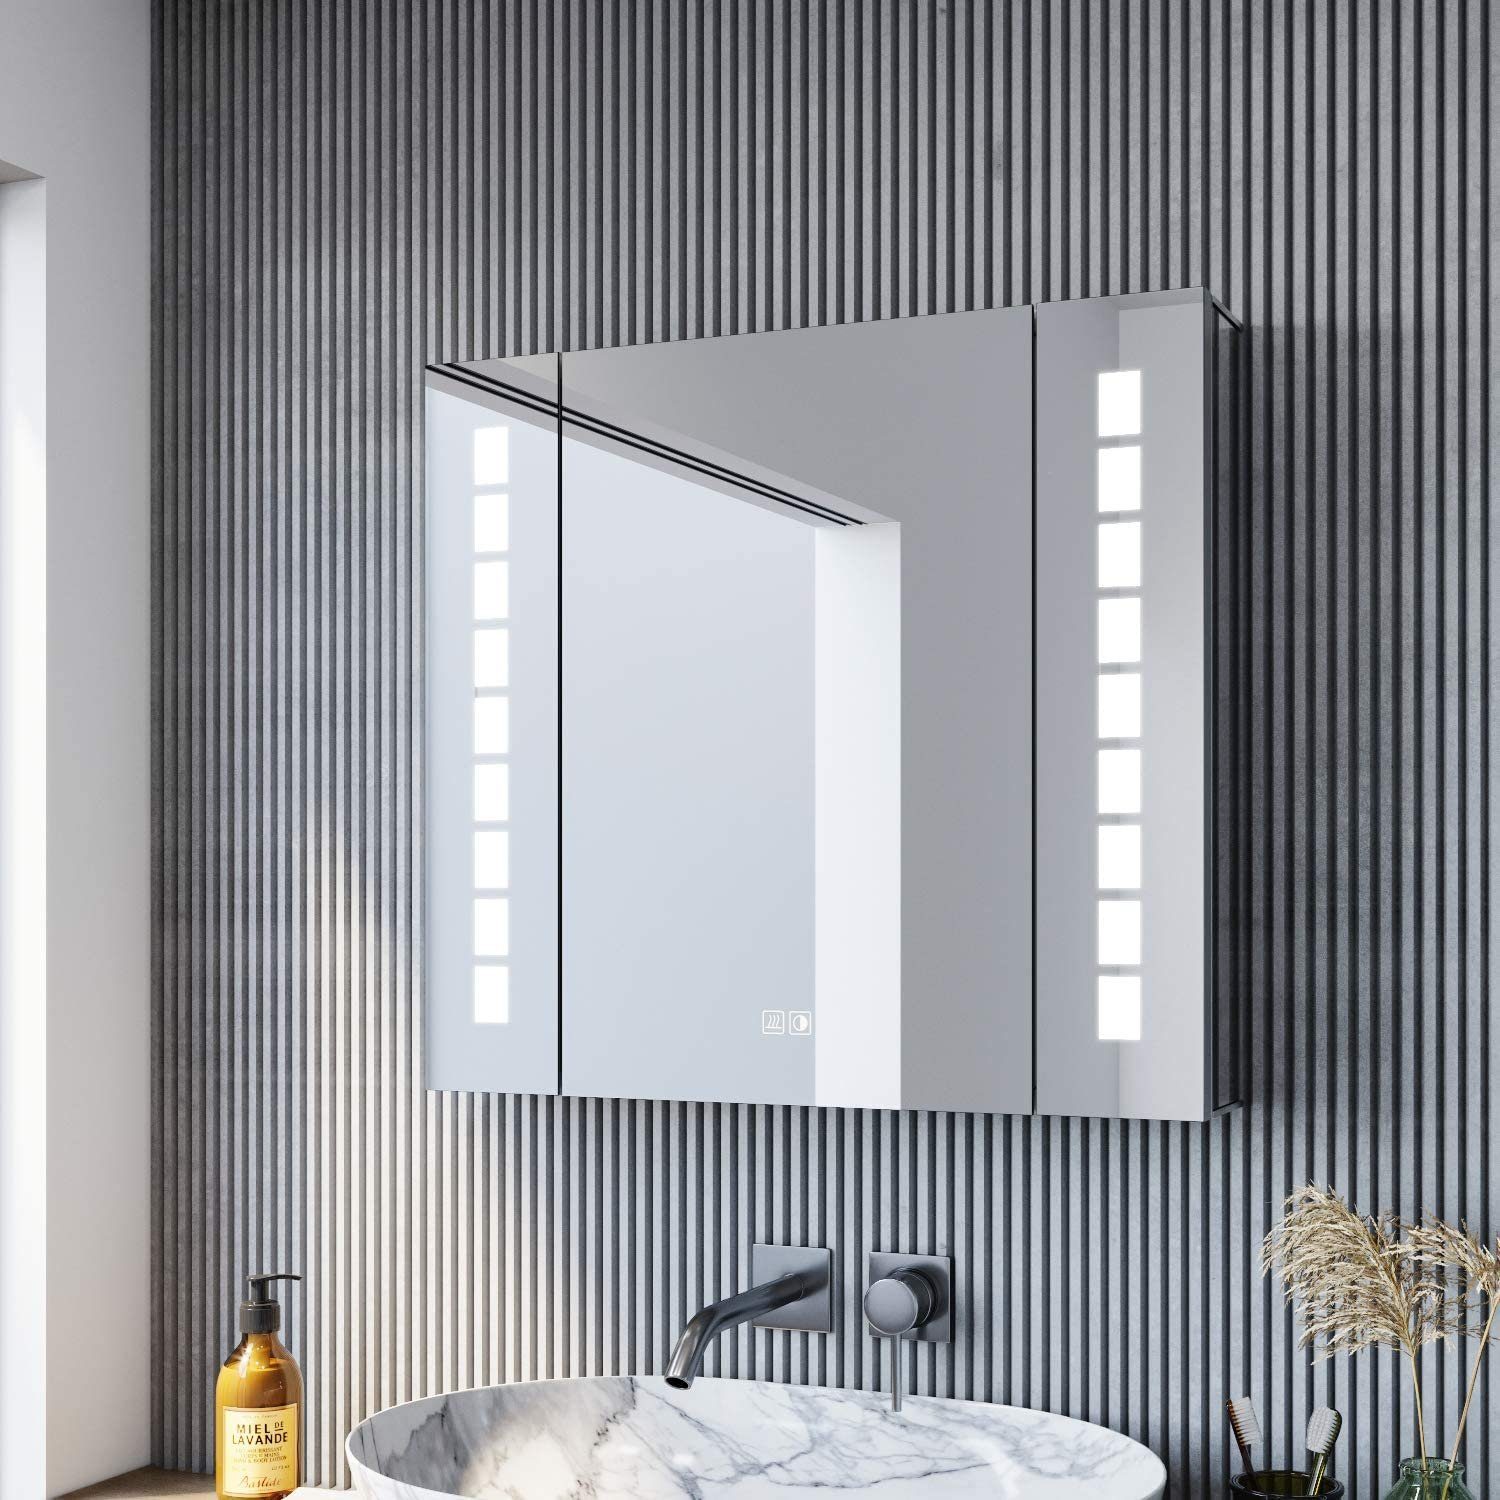 SONNI Spiegelschrank Breite 65cm mit Beleuchtung Spiegelschrank Bad mit Touch, Steckdose, Aluminium Beschlagfrei, 65×60cm LED